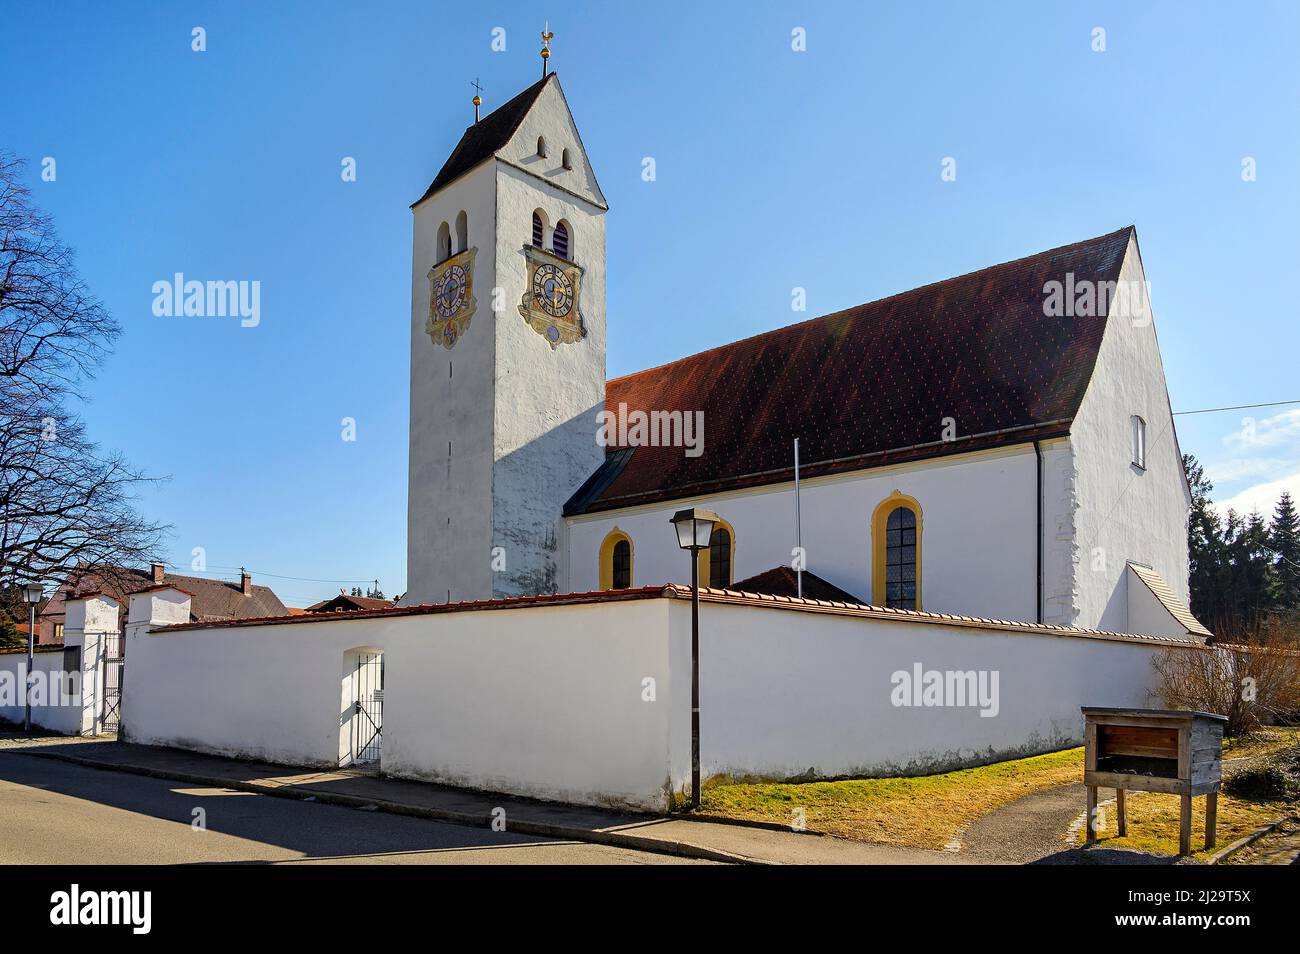 The Catholic Parish Church of St. Afra, Betzigau, Allgaeu, Bavaria, Germany Stock Photo